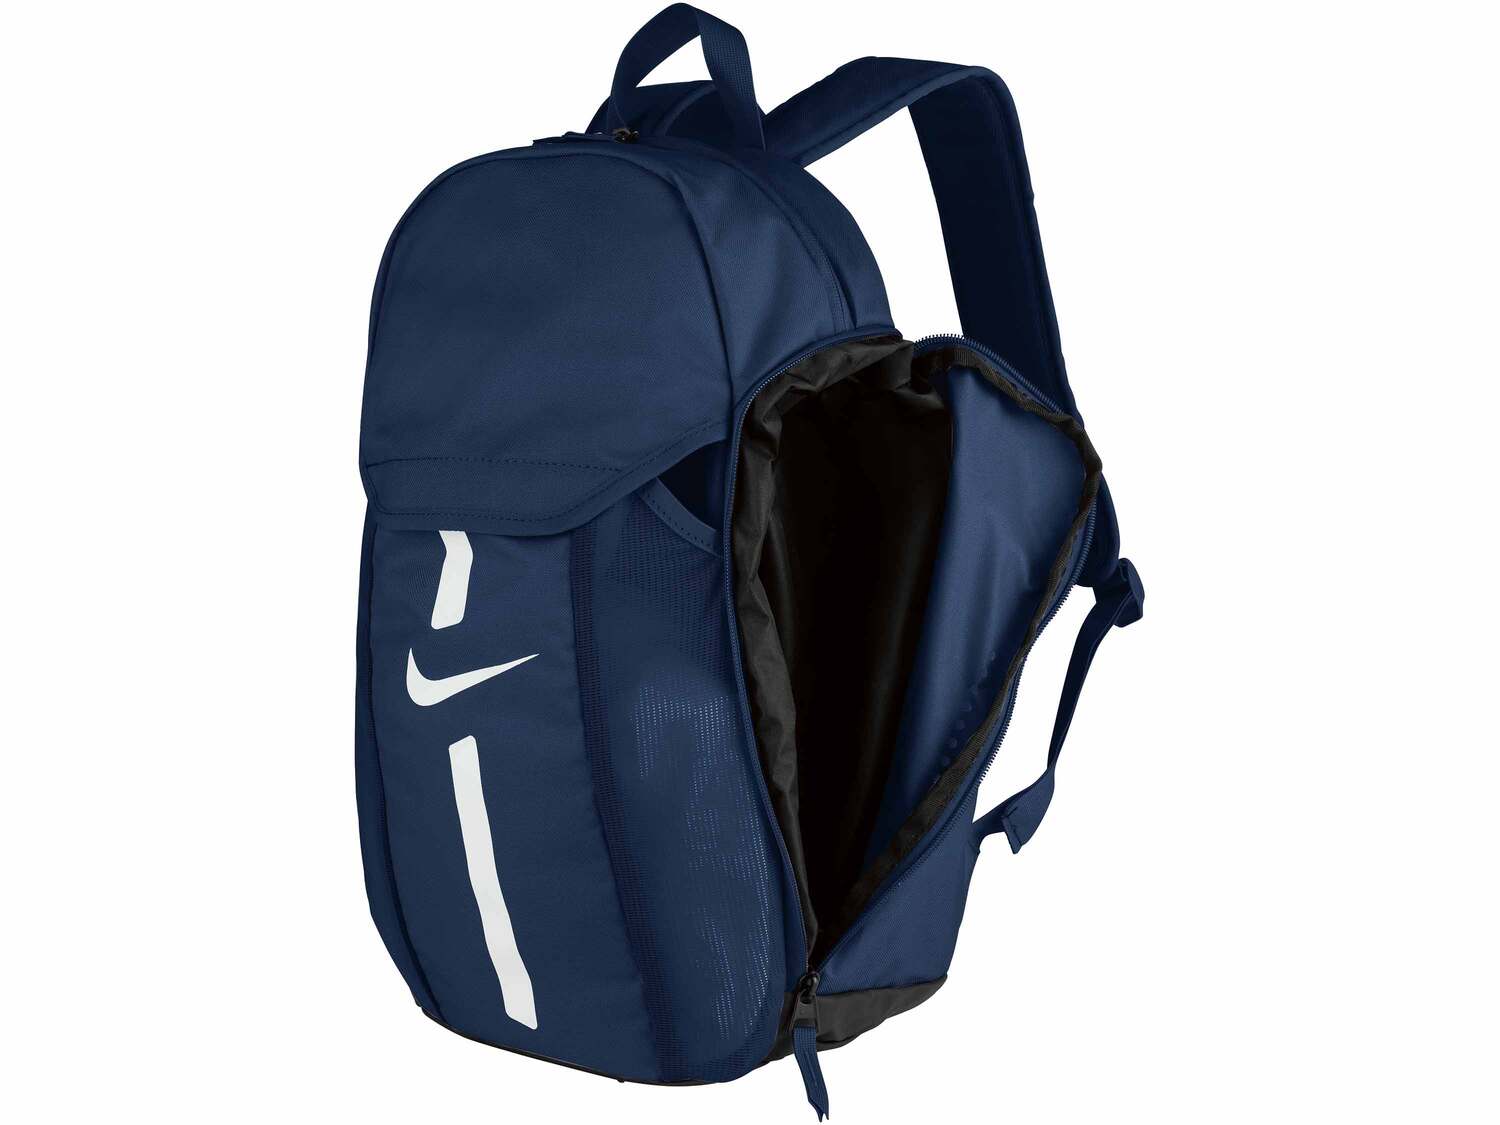 Plecak NIKE , cena 89,90 PLN  
-  funkcjonalny plecak z przegródkami